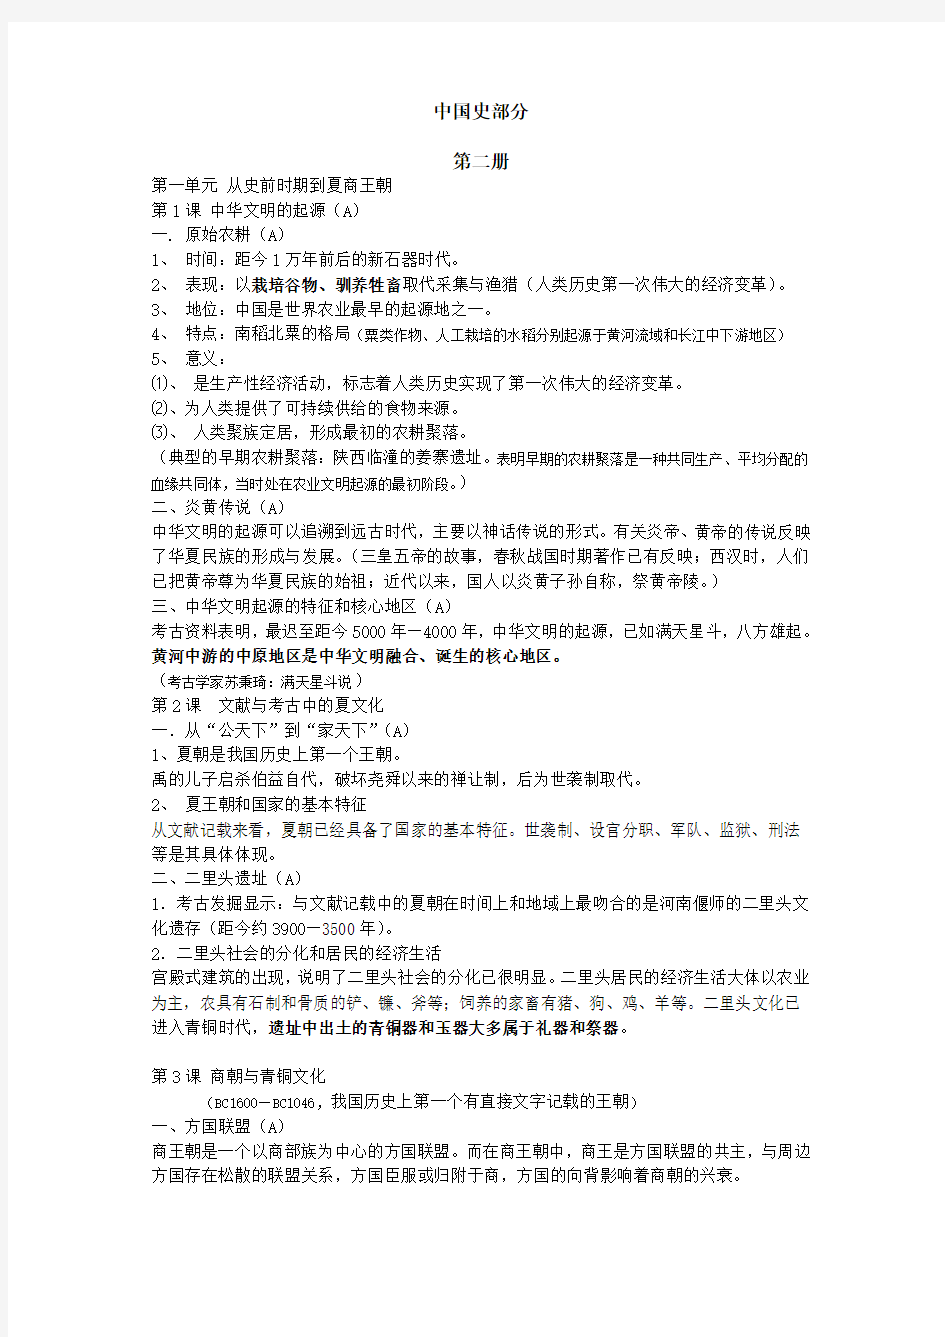 2011年华师大版高考历史全部整理(遵照考纲)之中国史部分